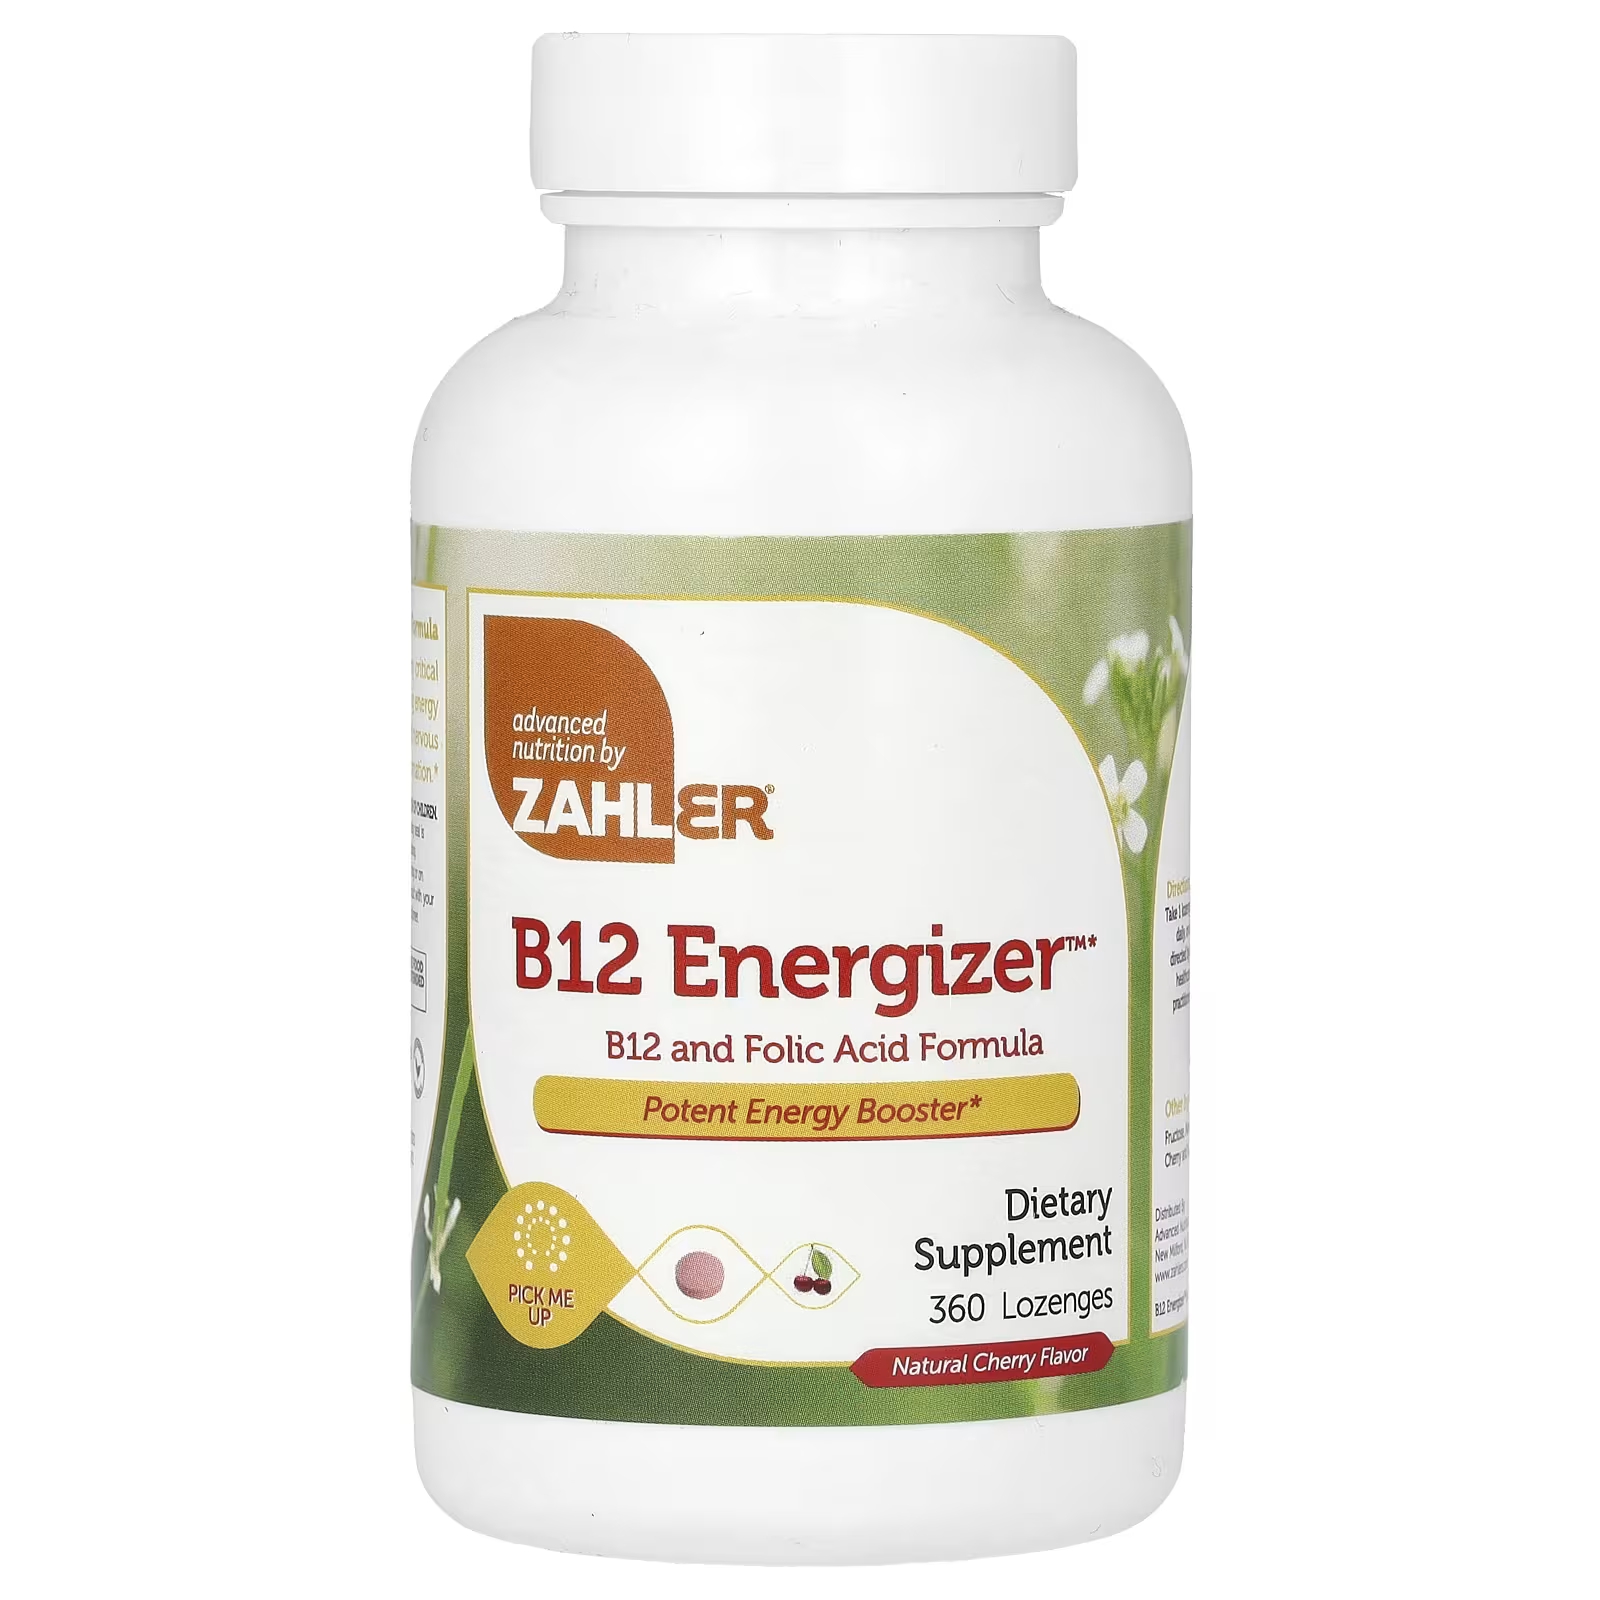 Пищевая добавка Zahler B12 Energizer B12 и формула фолиевой кислоты с натуральной вишней, 360 пастилок витамин b12 и фолиевая кислота zahler b12 energizer с натуральным вишневым вкусом 90 пастилок